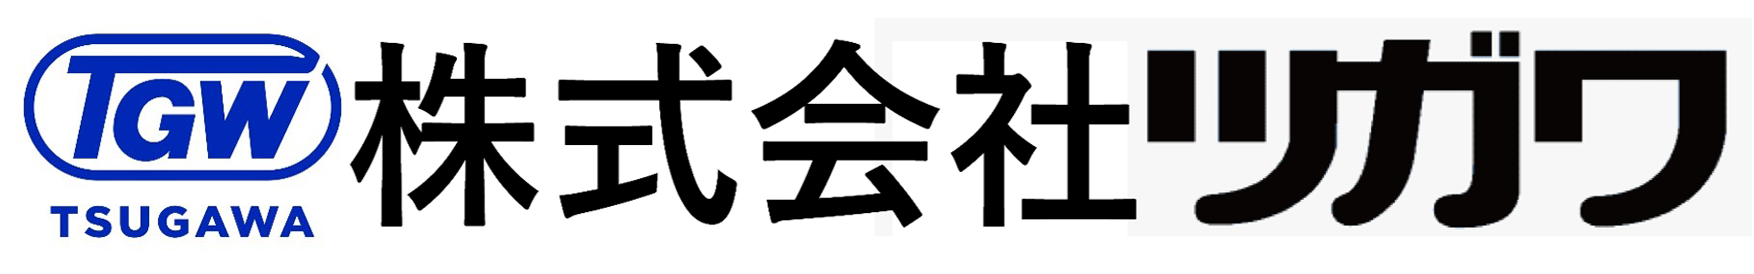 logo_tsugawa